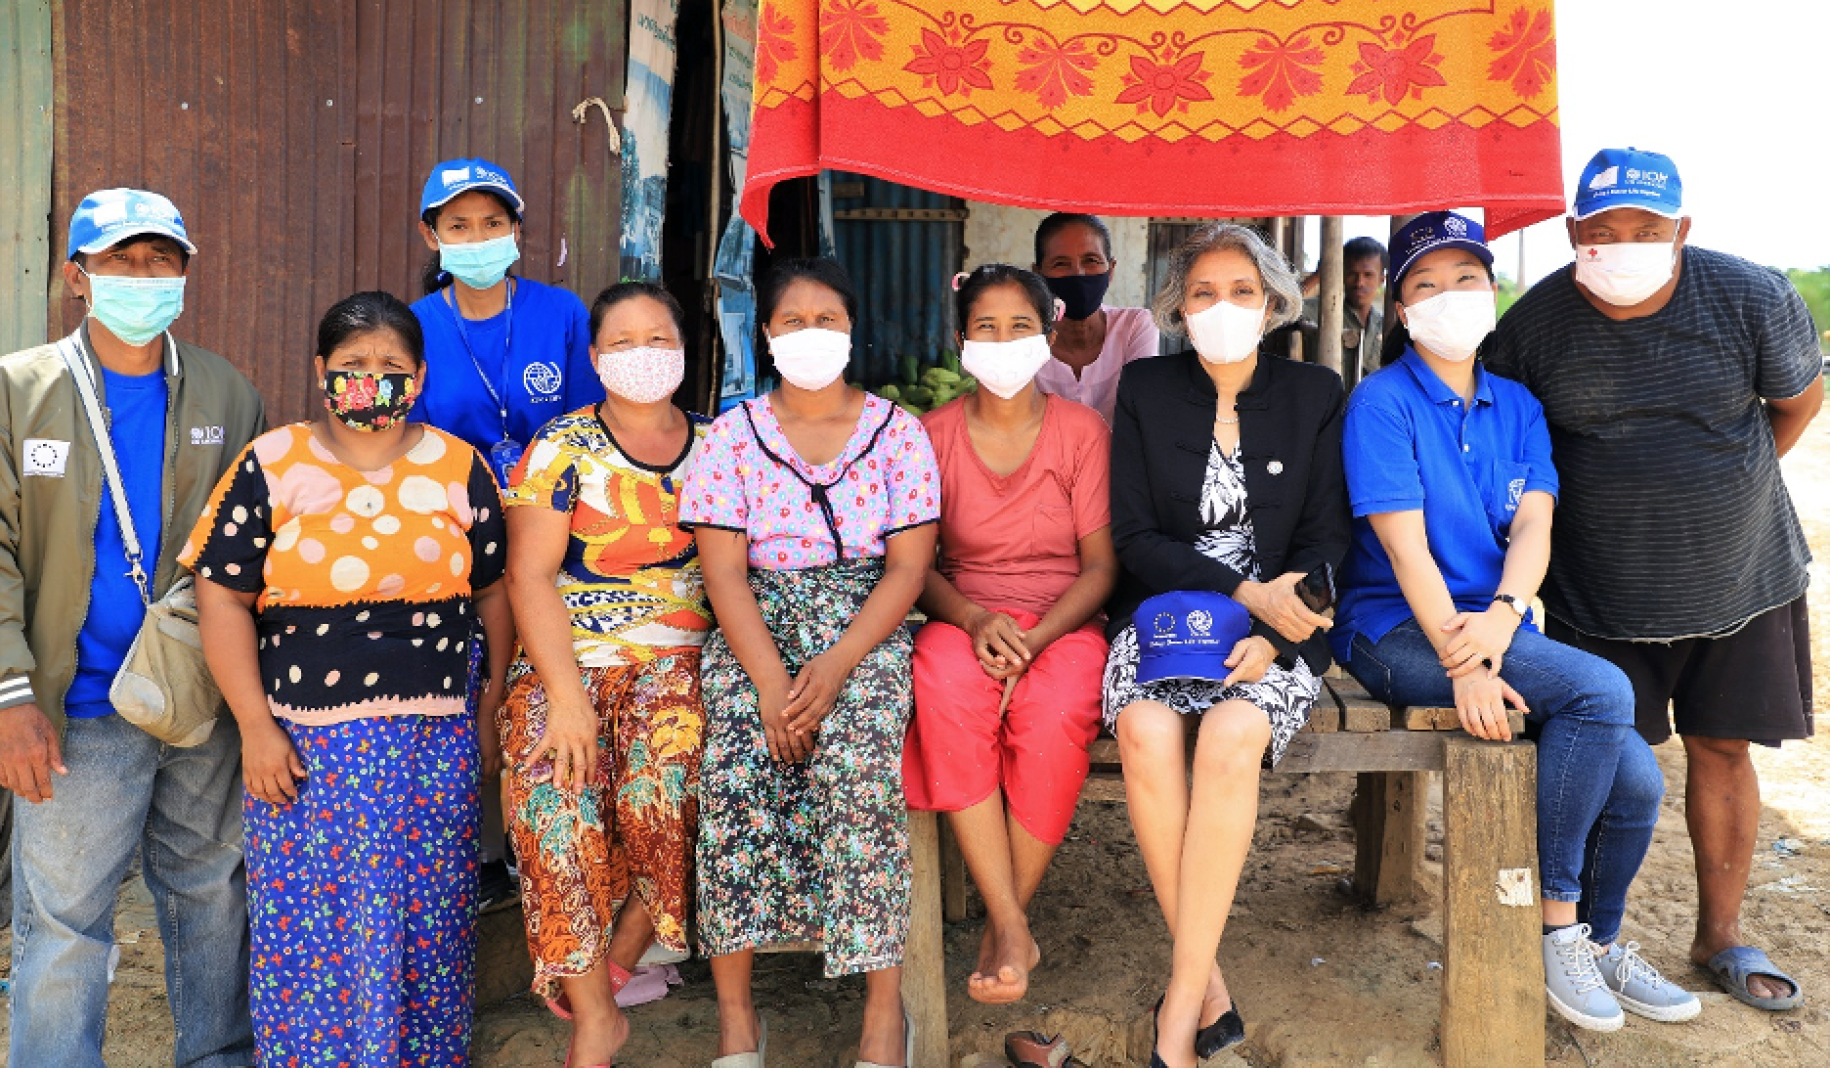 Plusieurs femmes et hommes portant un masque de protection respiratoire, dont la Coordonnatrice résidente de l’ONU en Thaïlande, Gita Sabharwal, sont assis côte à côte sur le bord d’une grand table en bois, en extérieur, et regardent en direction de l’objectif.